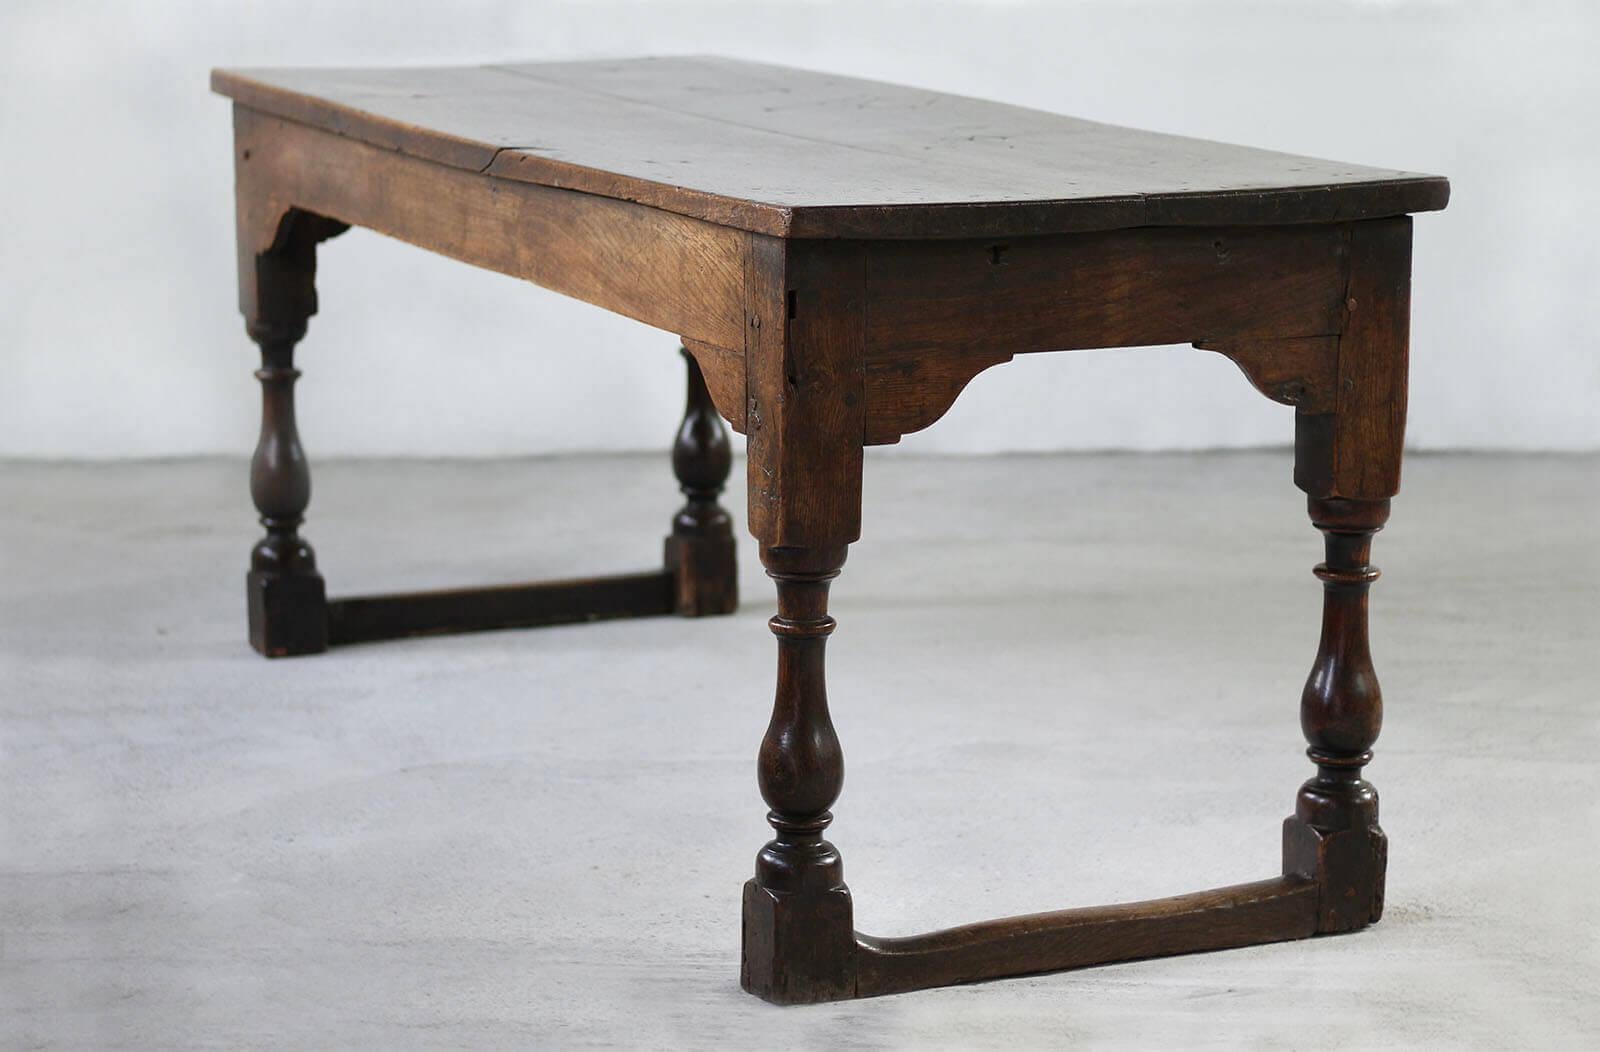 Dieser wunderschöne Tisch wurde wahrscheinlich um das 19. Jahrhundert in England hergestellt und strahlt einen besonderen Charme aus, der das Wesen der englischen Handwerkskunst einfängt.  Im Laufe der Jahre hat es eine einzigartige Patina